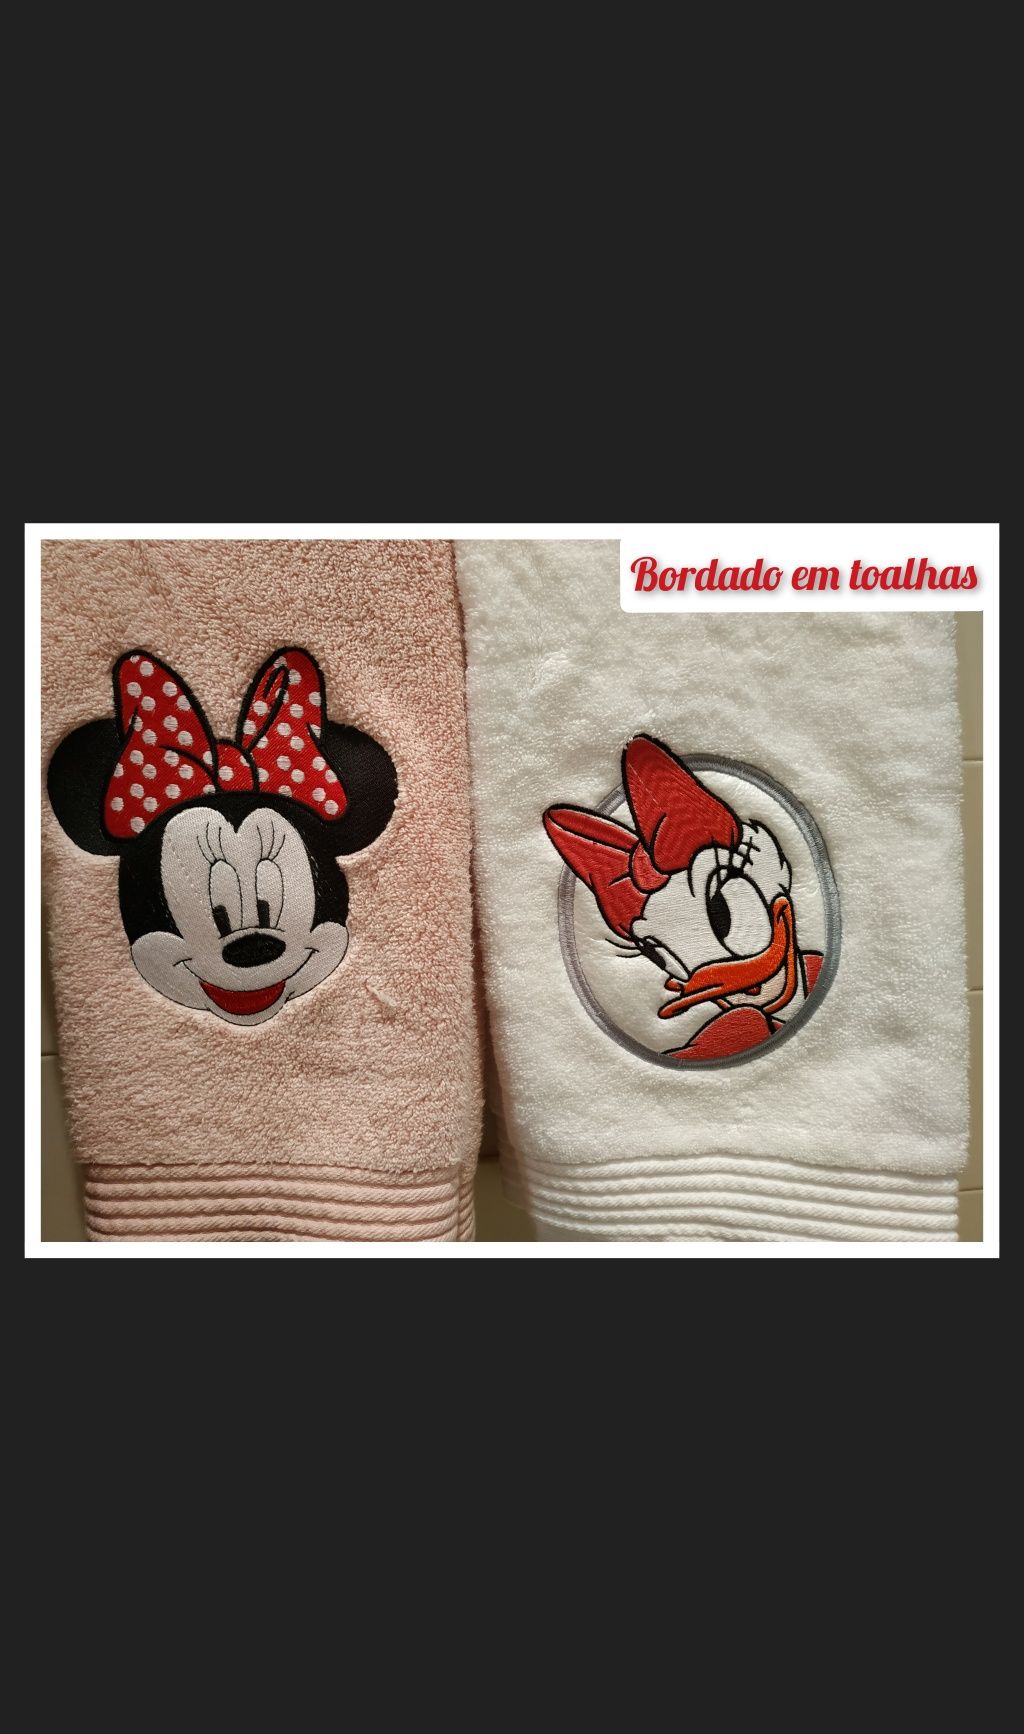 Bordados personalizados em toalhas